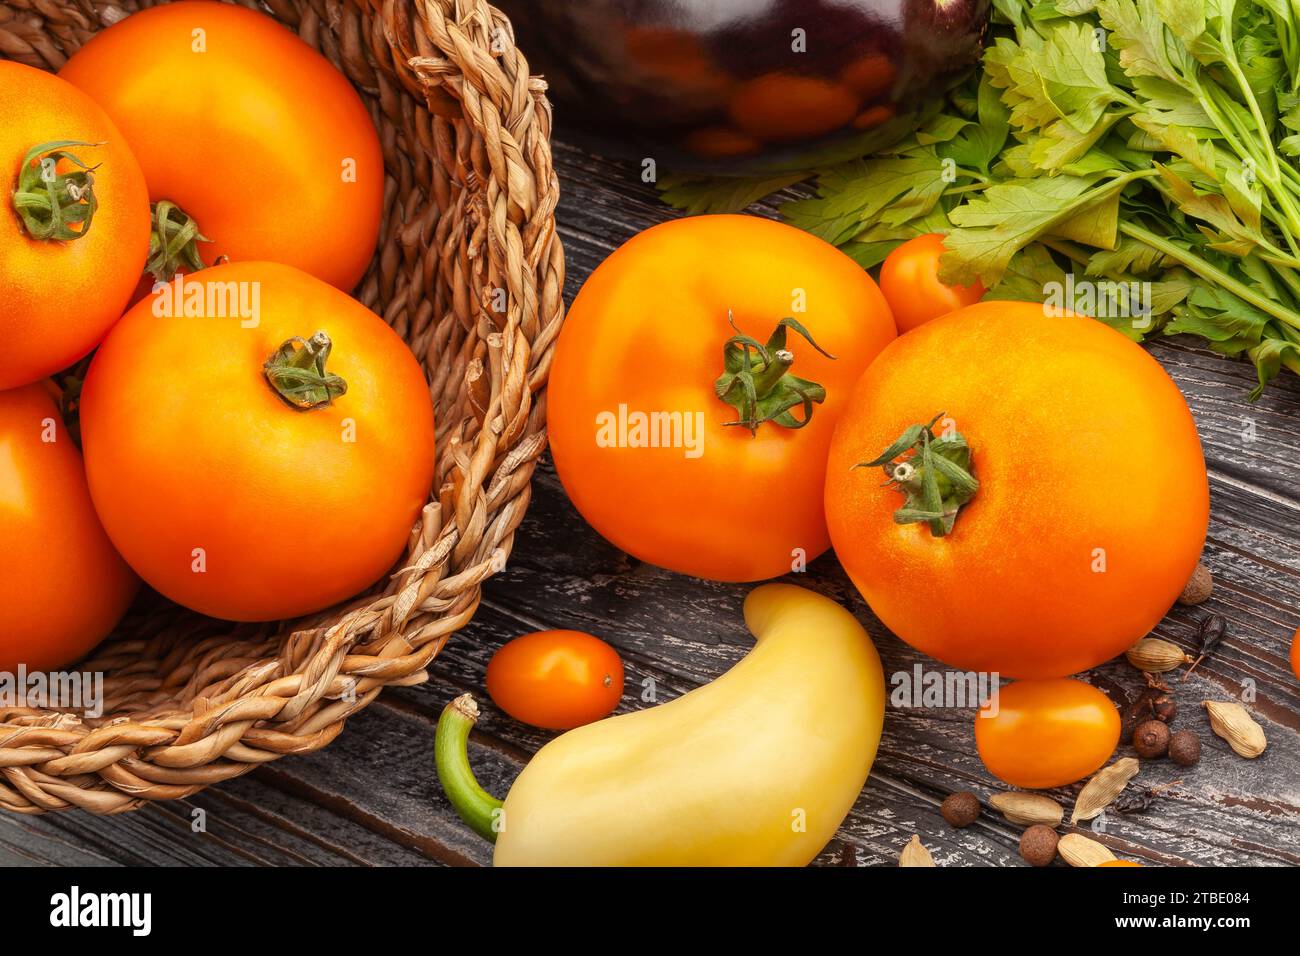 orange tomato on wood background Stock Photo